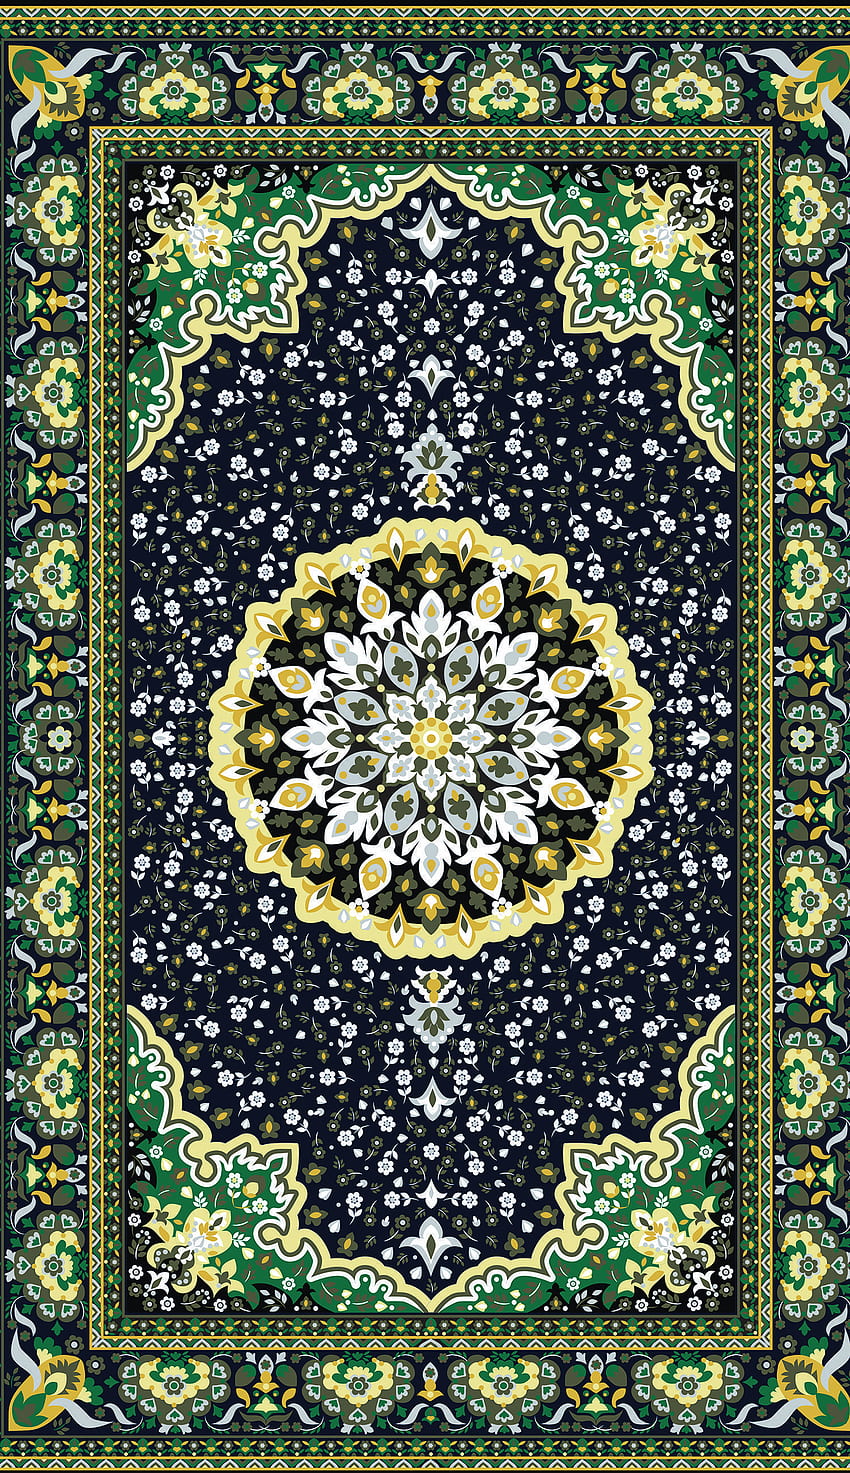 Green Carpet & Mandala iPhone oleh Ini Aslinya. Motif batik, mandala iphone, iphone wallpaper ponsel HD